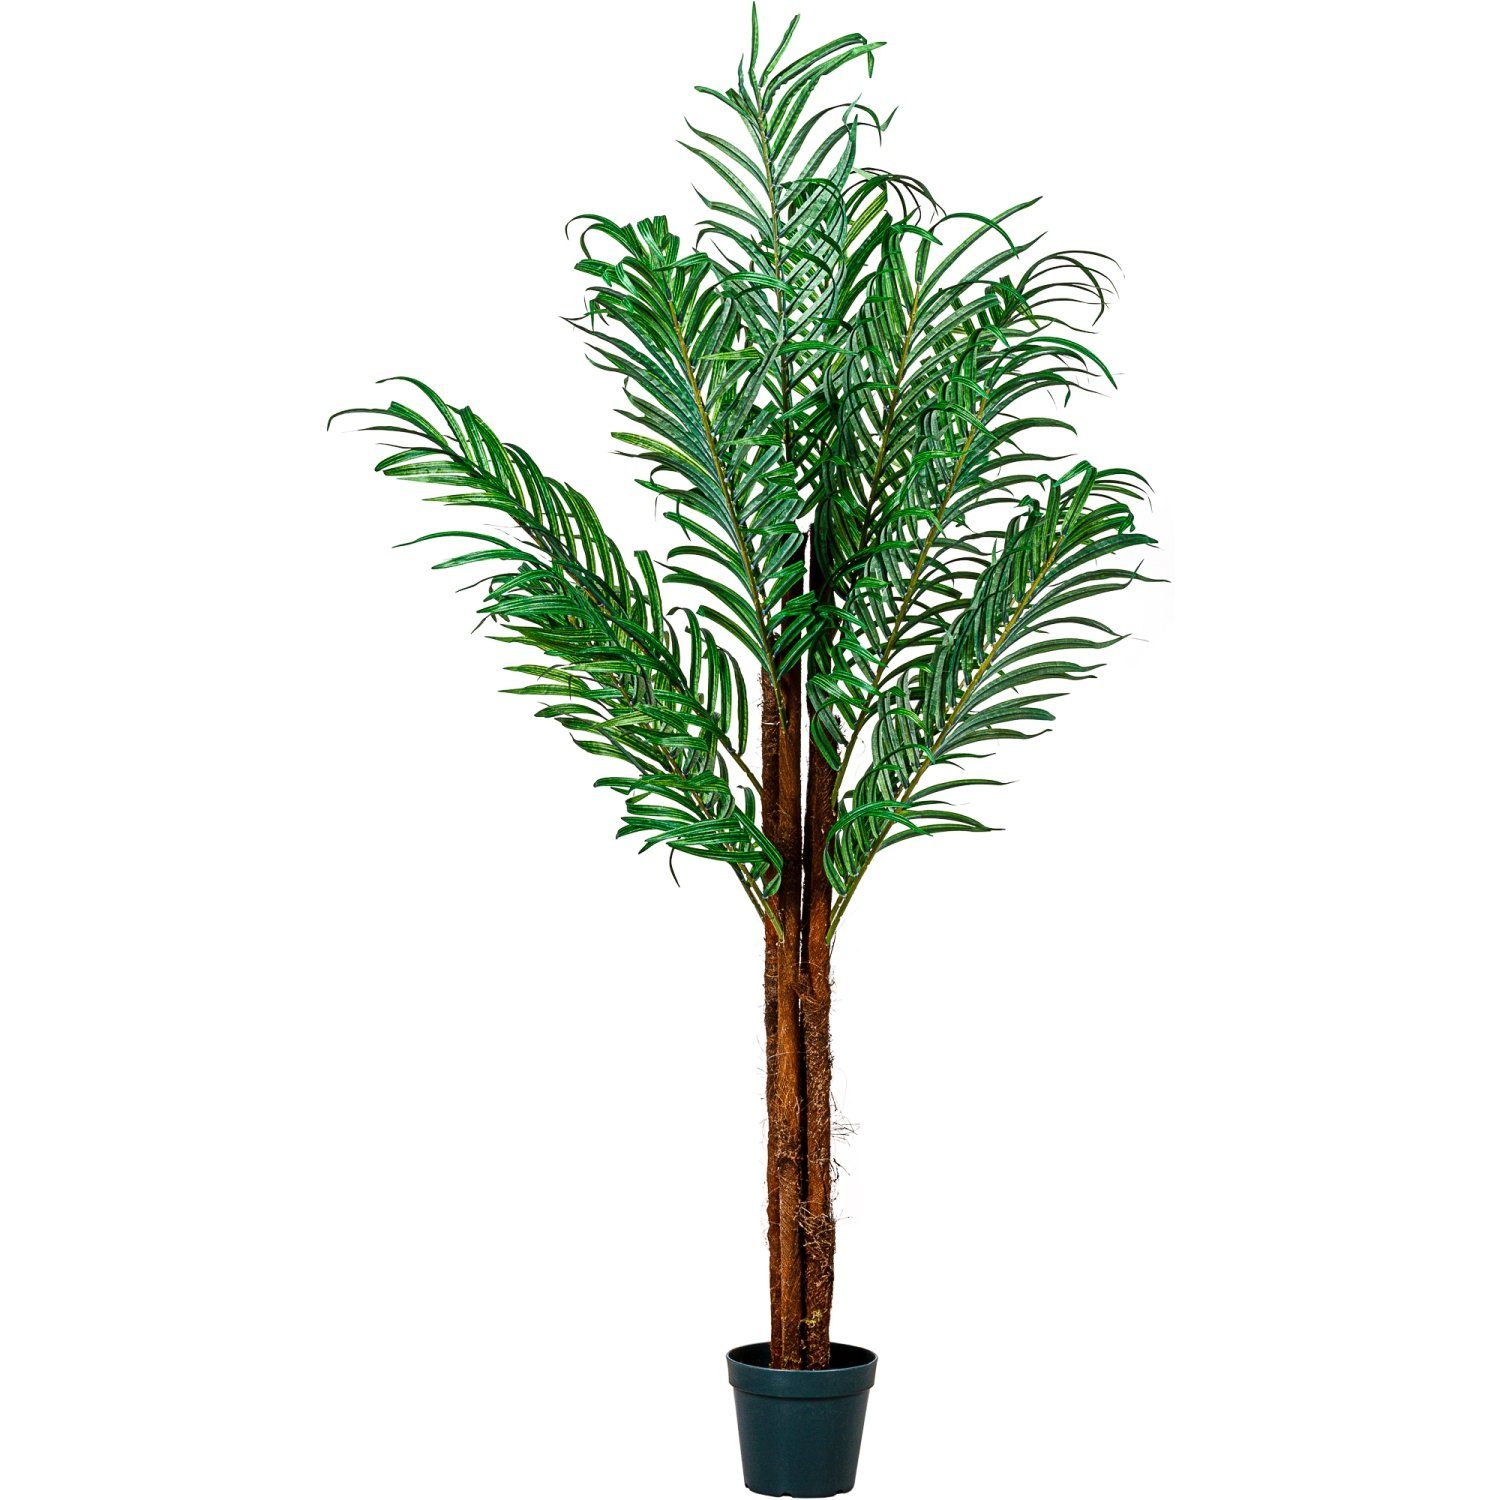 Kunstbaum Künstliche Kokos Palme Kunstpflanze Kunstbaum Kokos Palme, PLANTASIA, Höhe 160,00 cm, 160 cm, 420 Blätter, Echtholzstamm